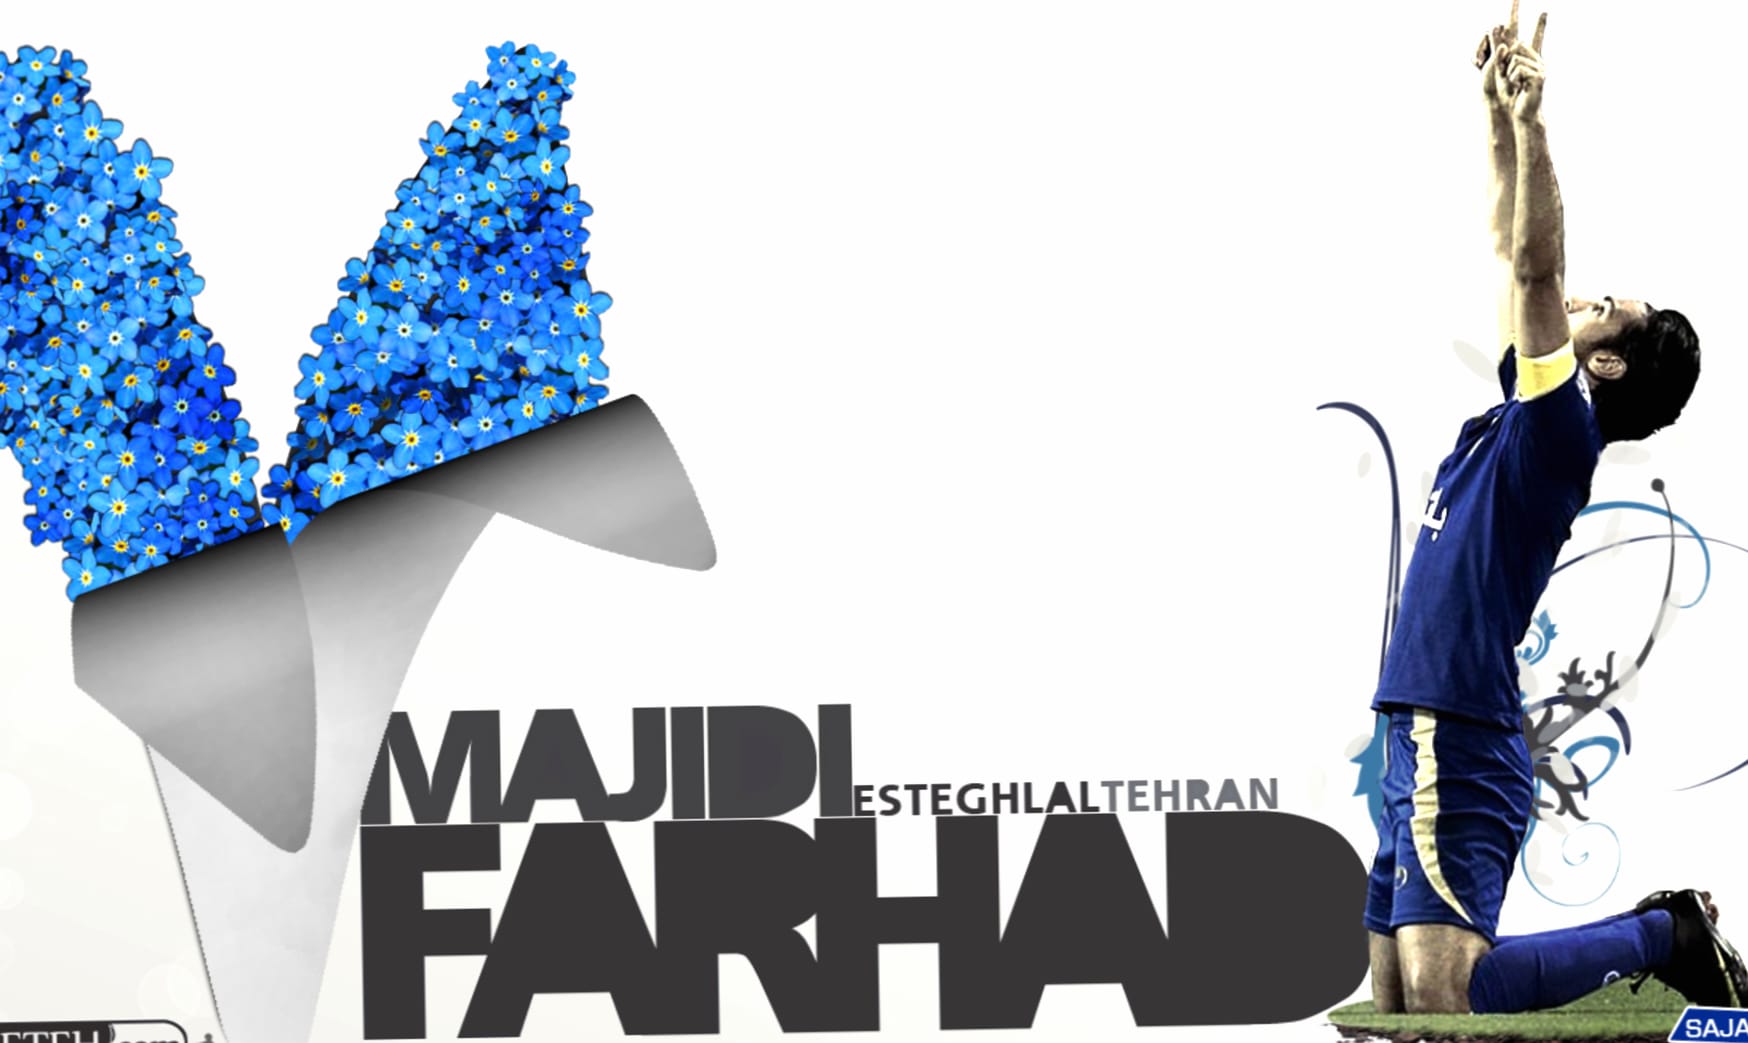 Farhad Majidi at 1024 x 768 size wallpapers HD quality